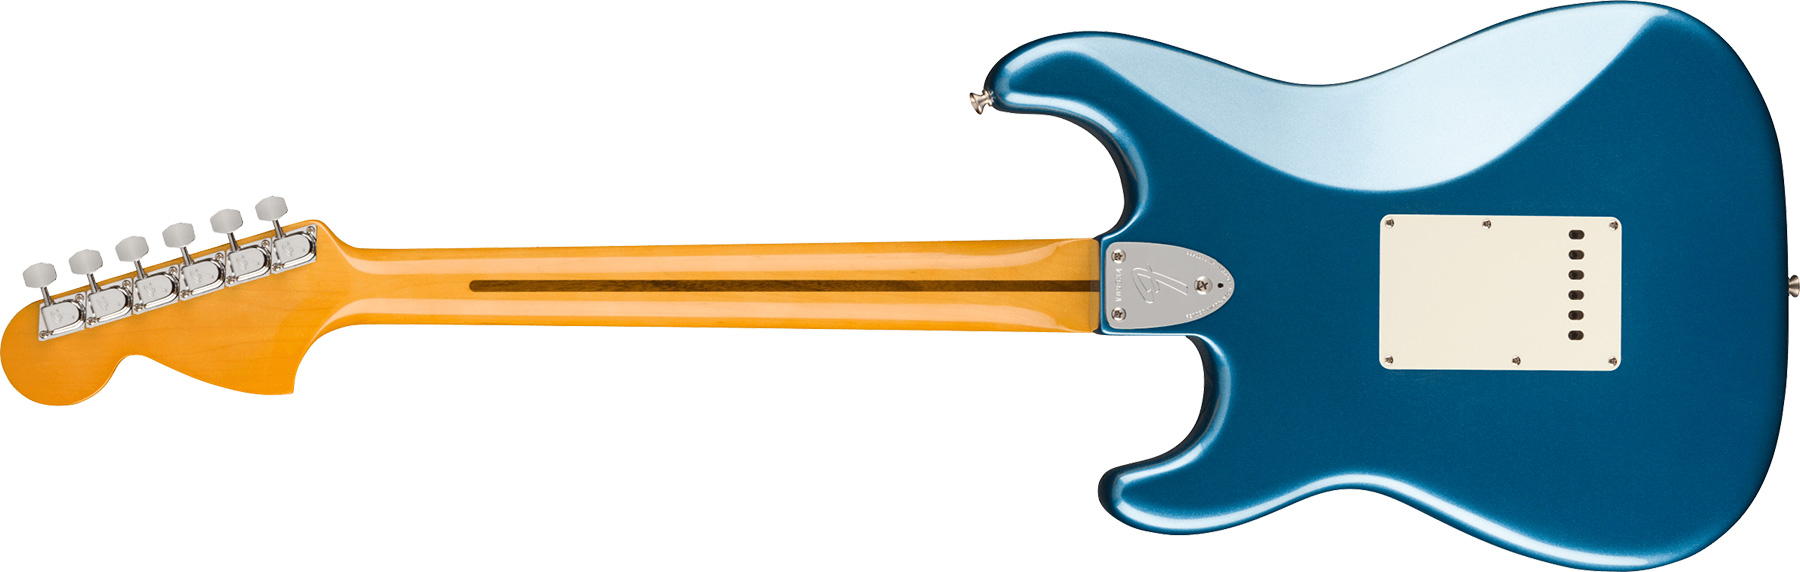 Fender Strat 1973 American Vintage Ii Usa 3s Trem Mn - Lake Placid Blue - Guitare Électrique Forme Str - Variation 1